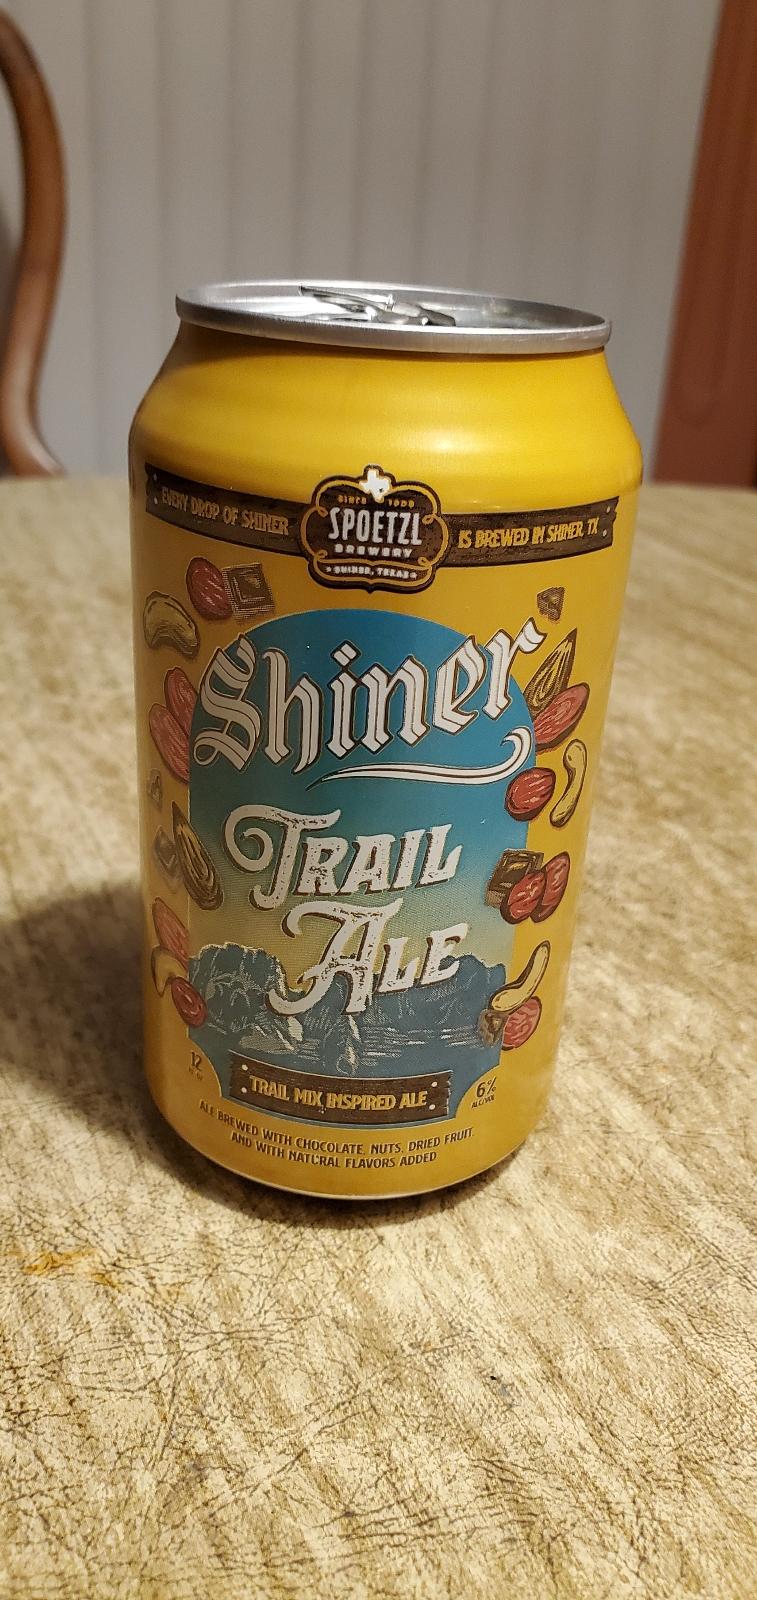 Trail Ale